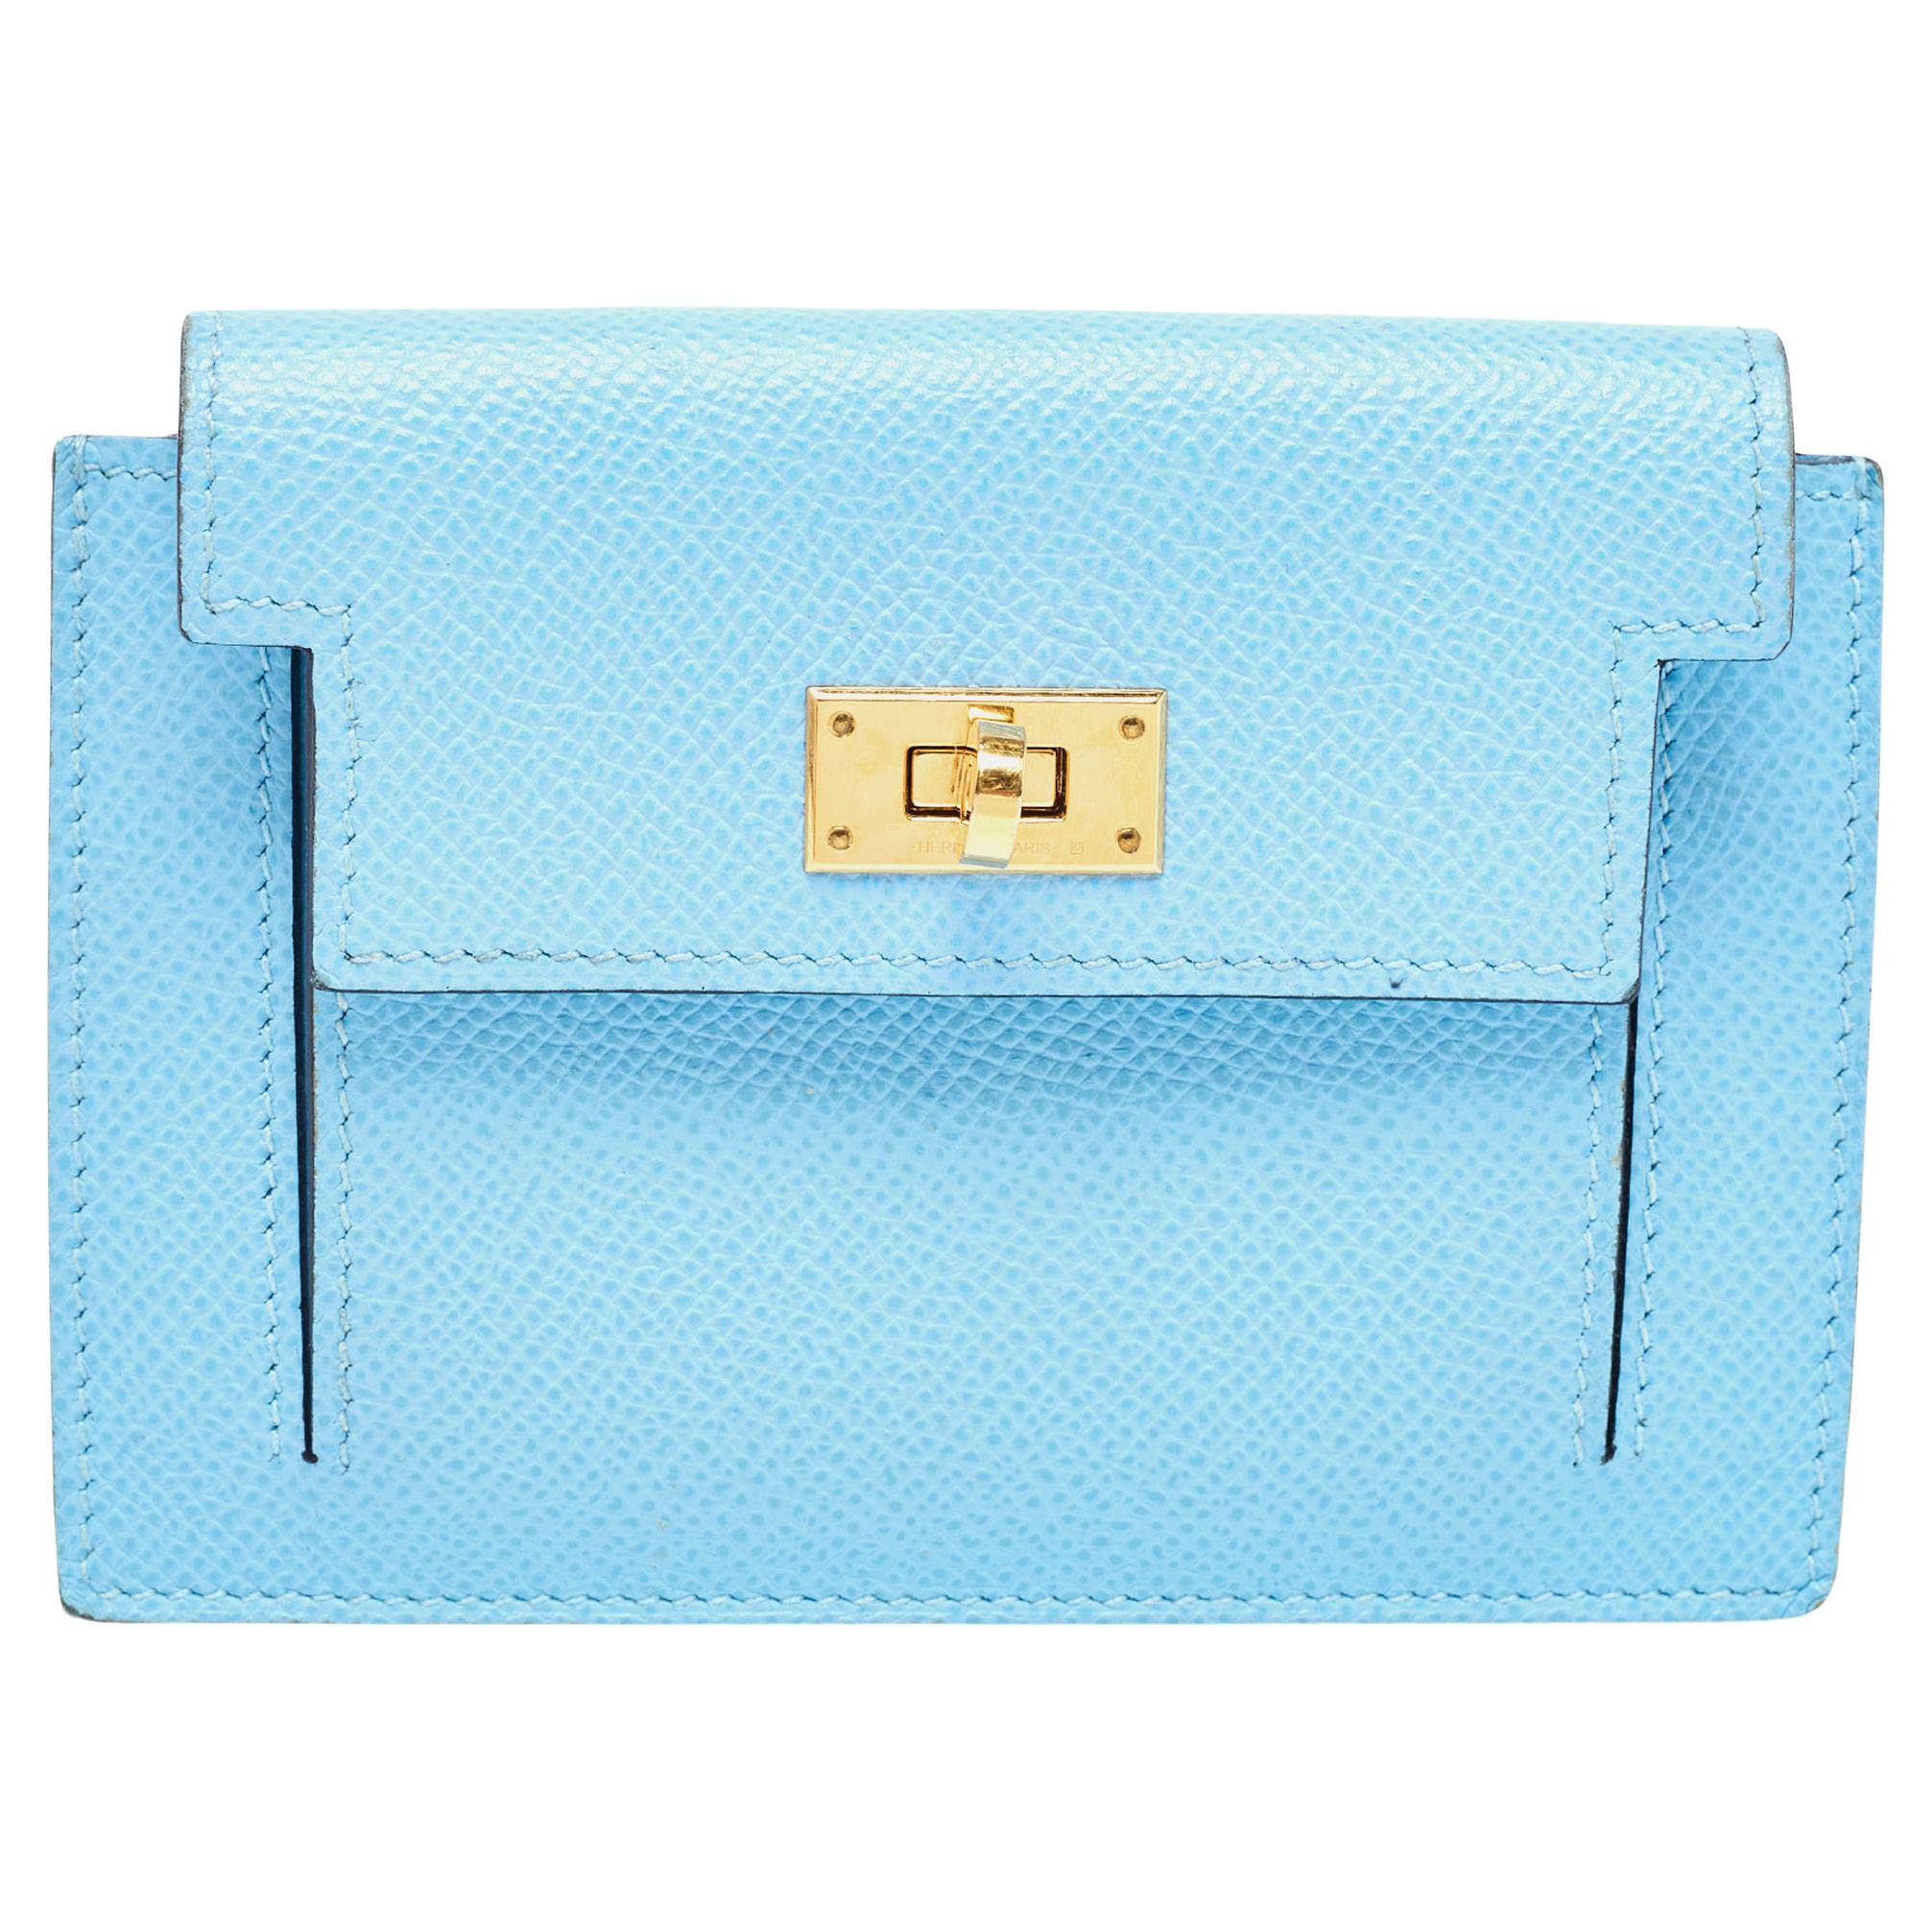 Hermes Celeste Epsom Leather Kelly Pocket Compact Wallet For Sale